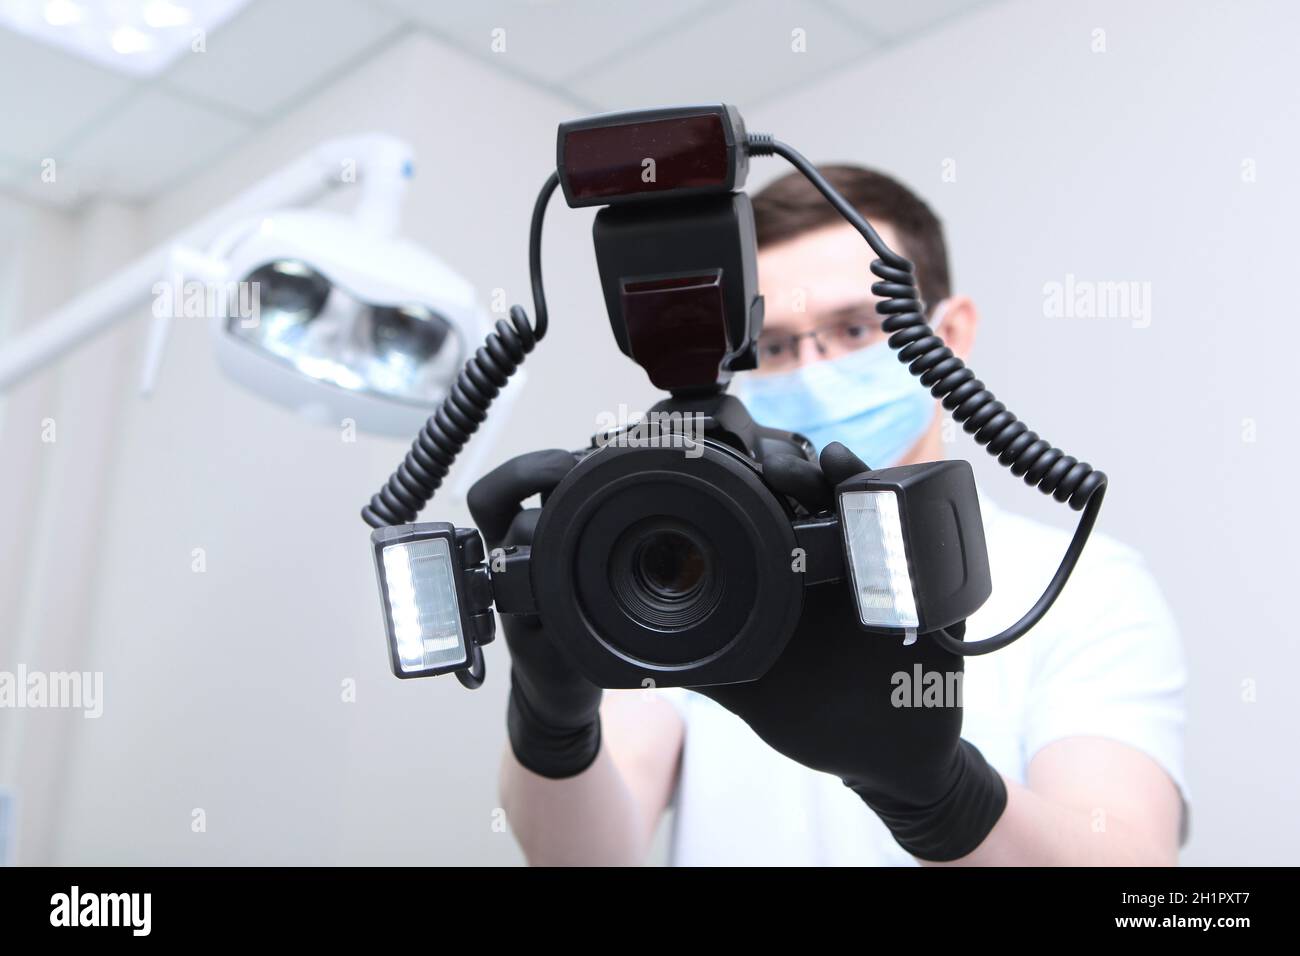 Der Zahnarztarzt macht ein Foto mit einer Kamera. Eine Kamera mit einem Ringblitz in den Händen eines Arztes. Arzt in einer medizinischen Maske. Hände in schützendem Schwarz Stockfoto